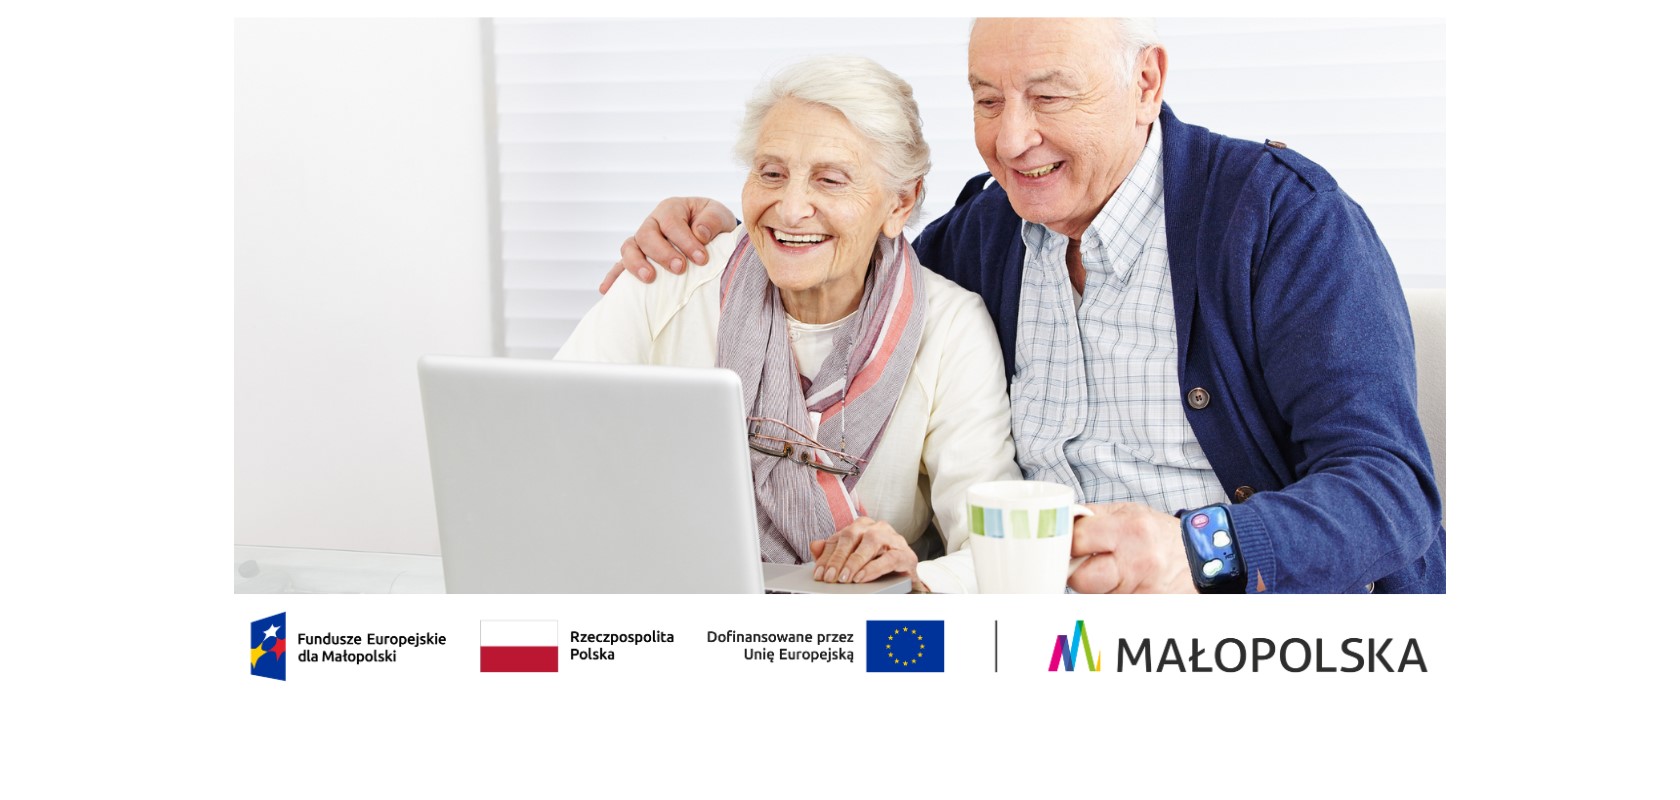 Starszy mężczyzna jedną ręką obejmuje starszą kobietę, a w drugiej ma założony zegarek z projektu Tele Anioł i jednocześnie trzyma kubek. Oboje uśmiechnięci siedzą przed laptopem wpatrując się w niego.